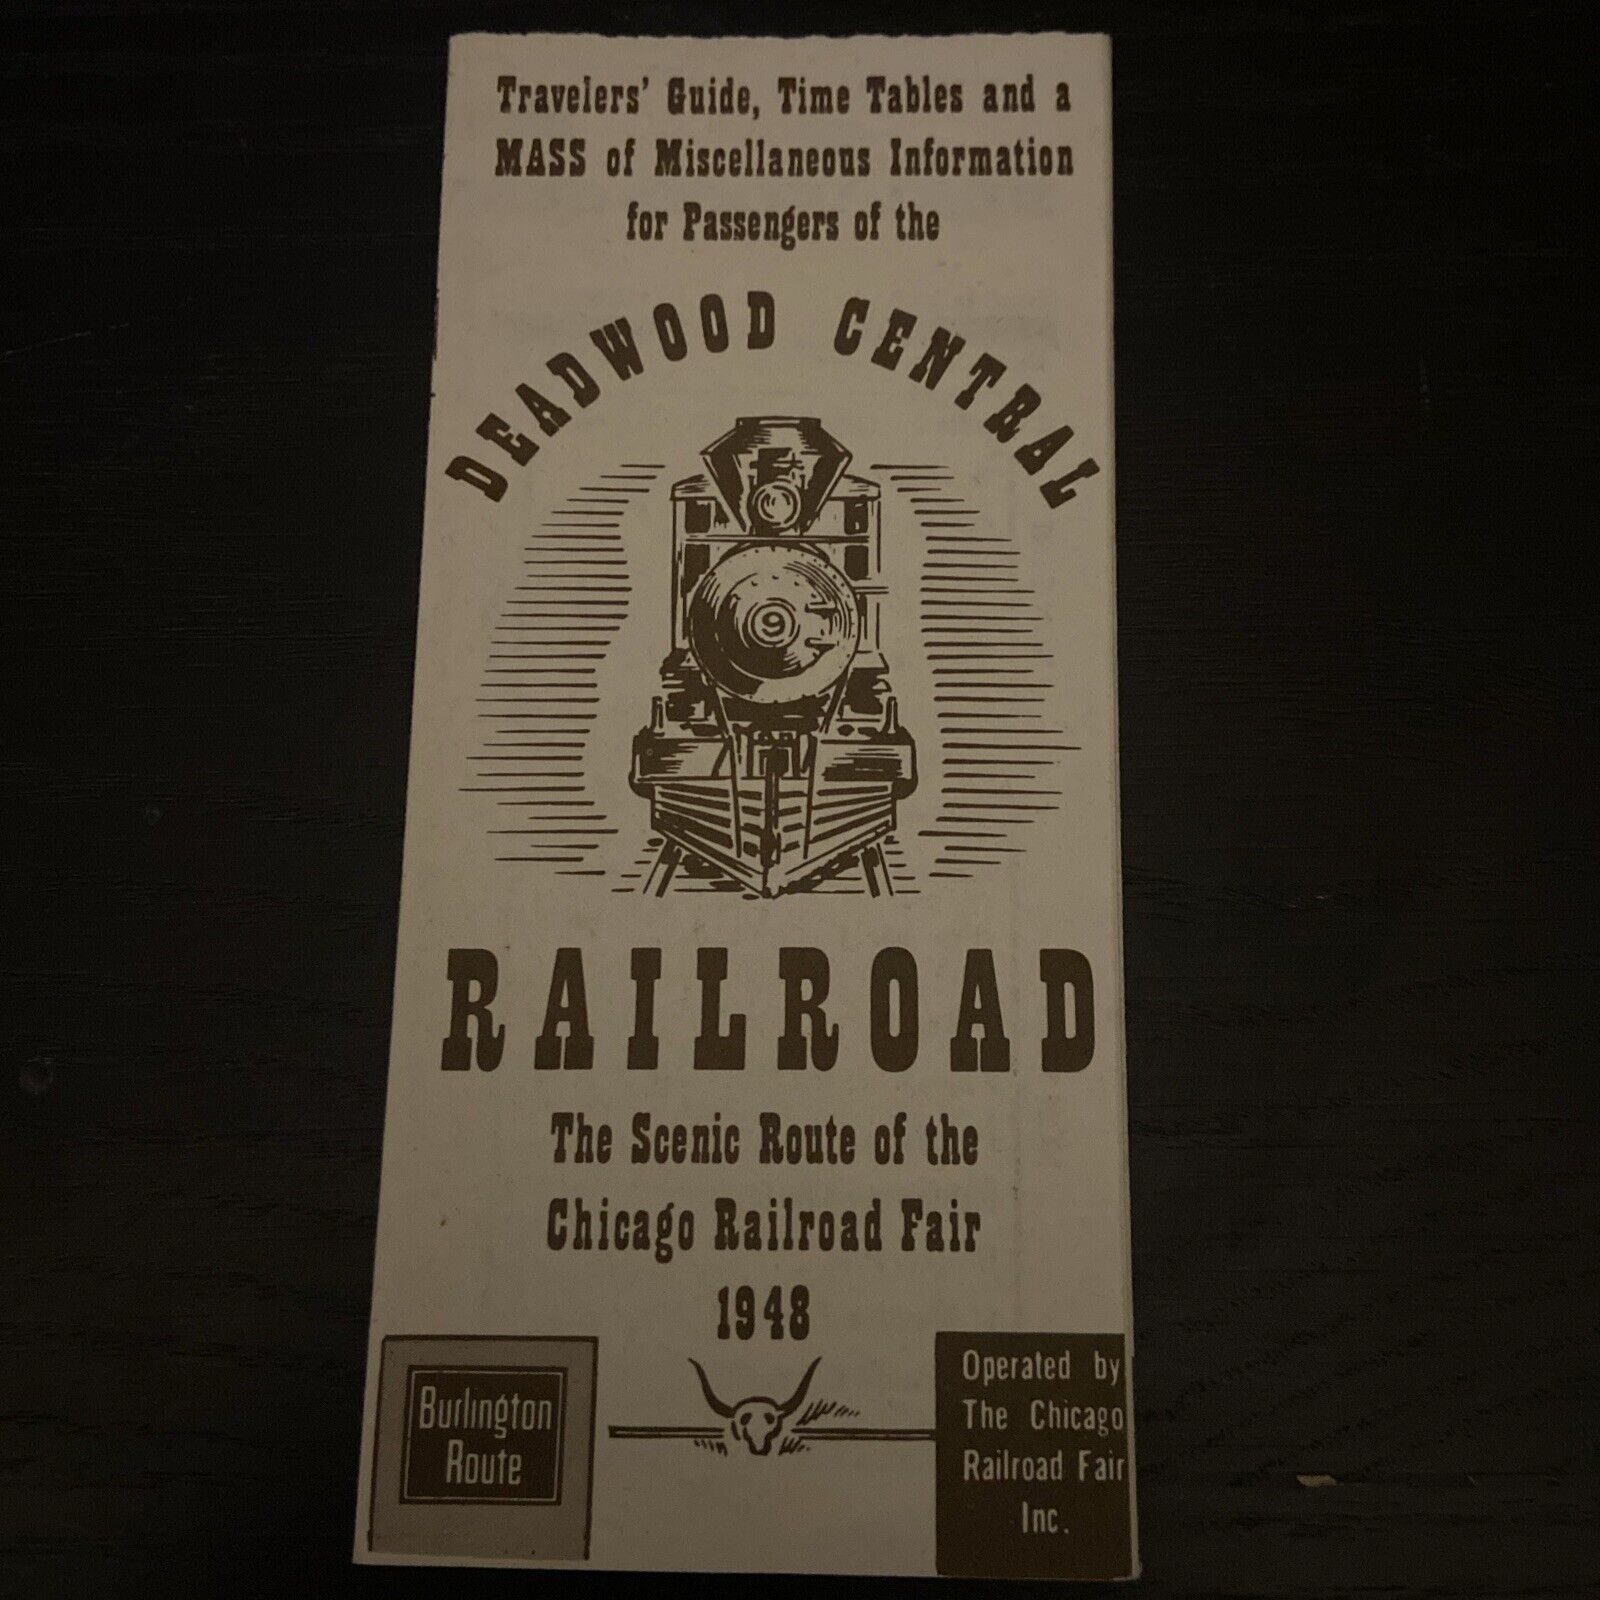 1948 Deadwood Central Railroad Scenic Route Chicago Railroad Fair Brochure